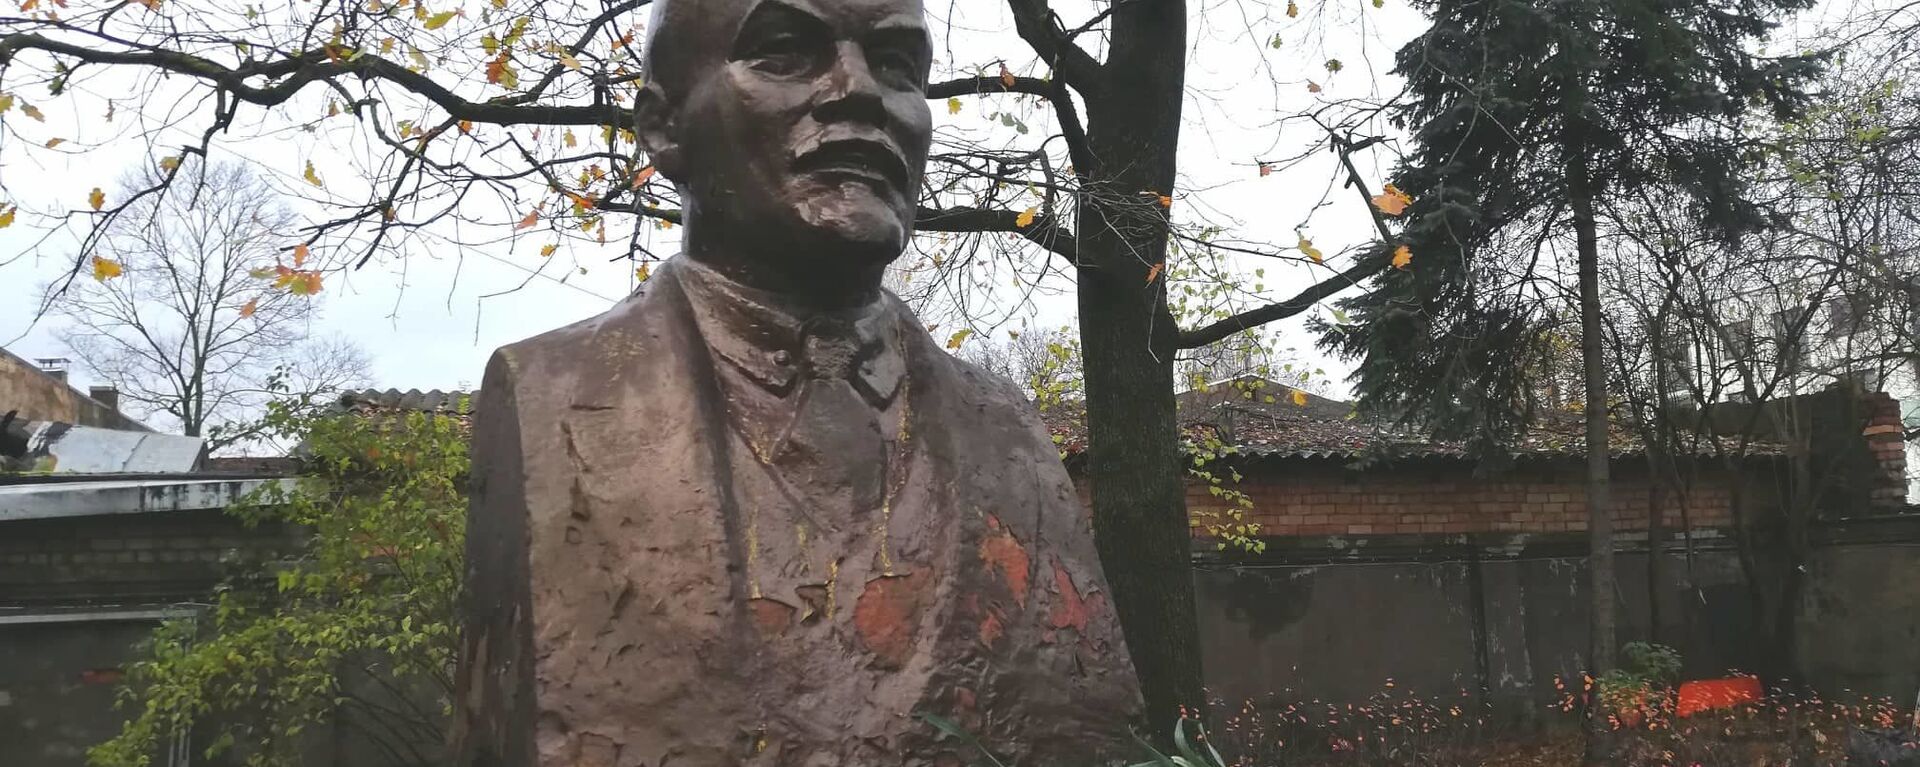 На Цесу, 17 стоит единственный в Риге памятник Ленину - Sputnik Latvija, 1920, 18.11.2020